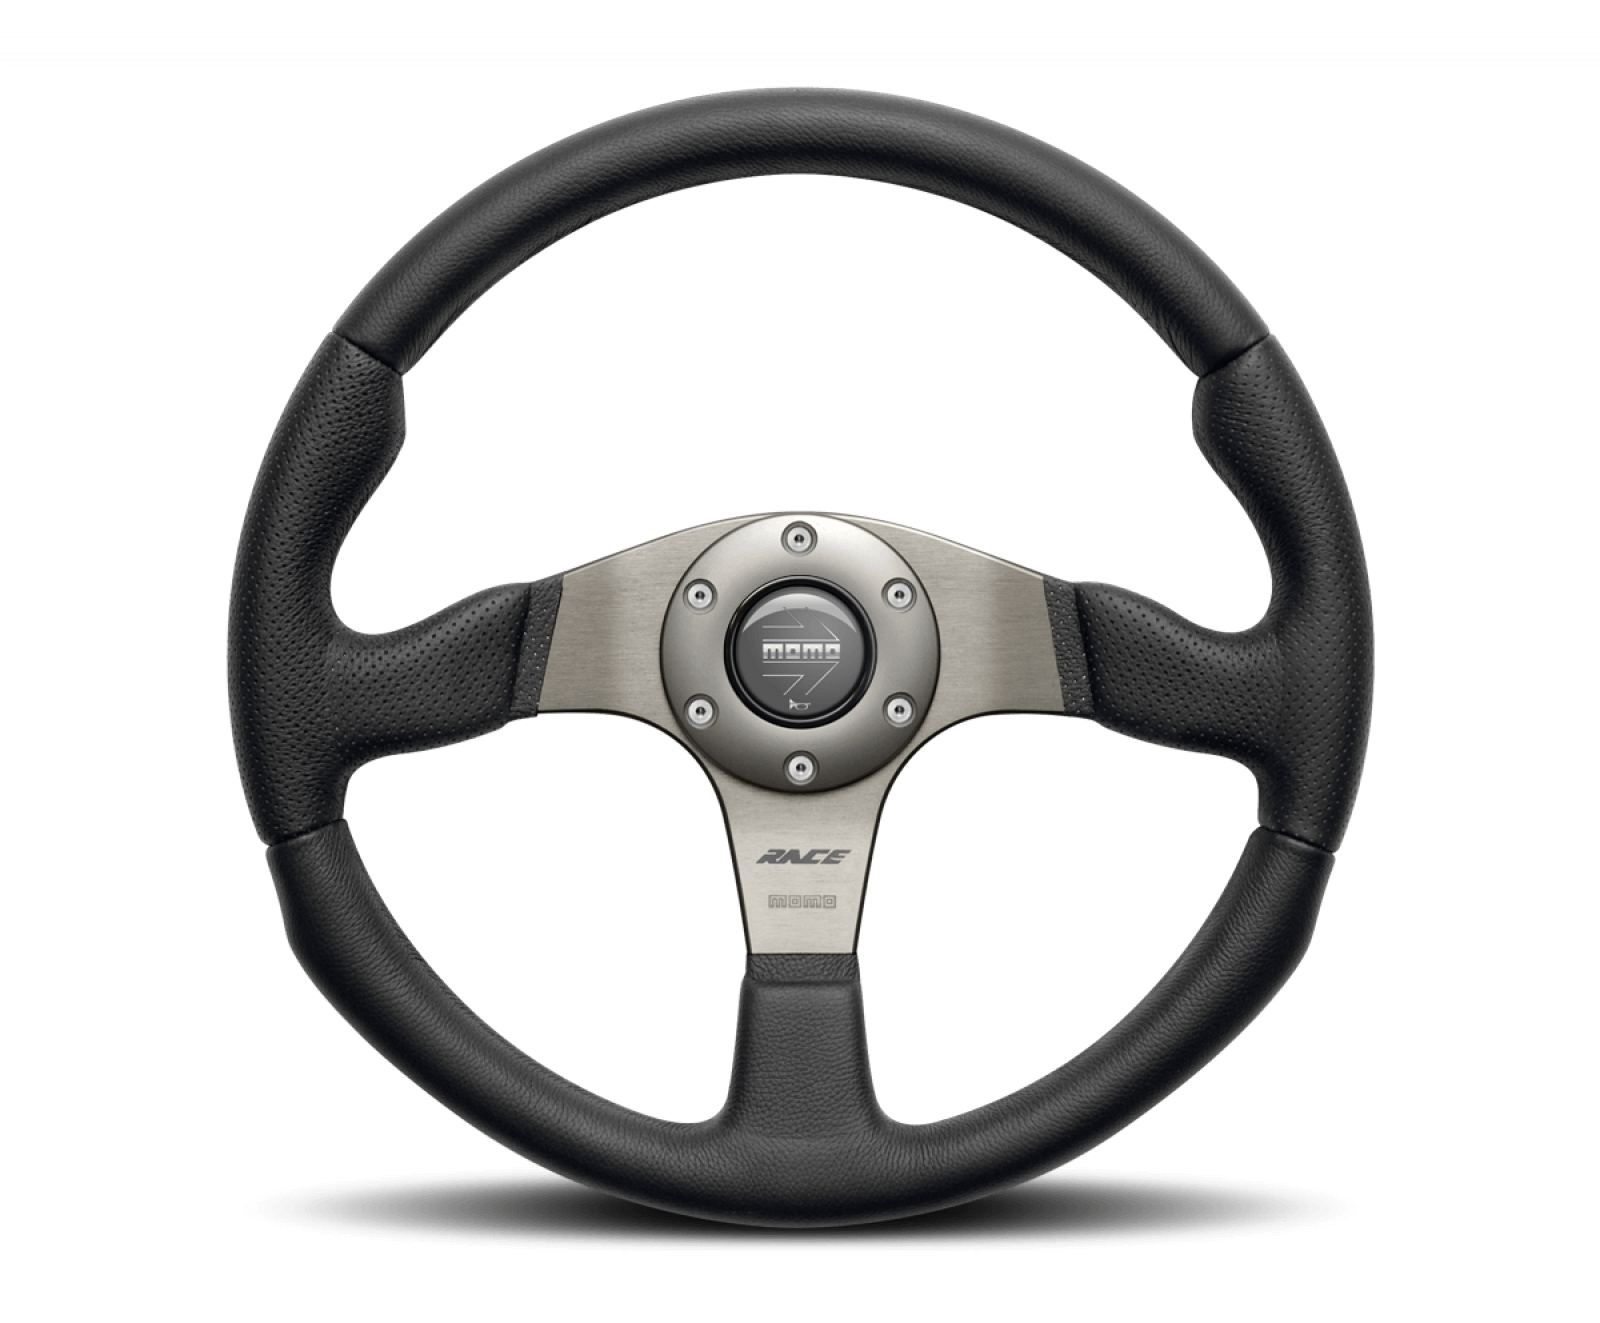 MOMO Race Steering Wheel - $219.00